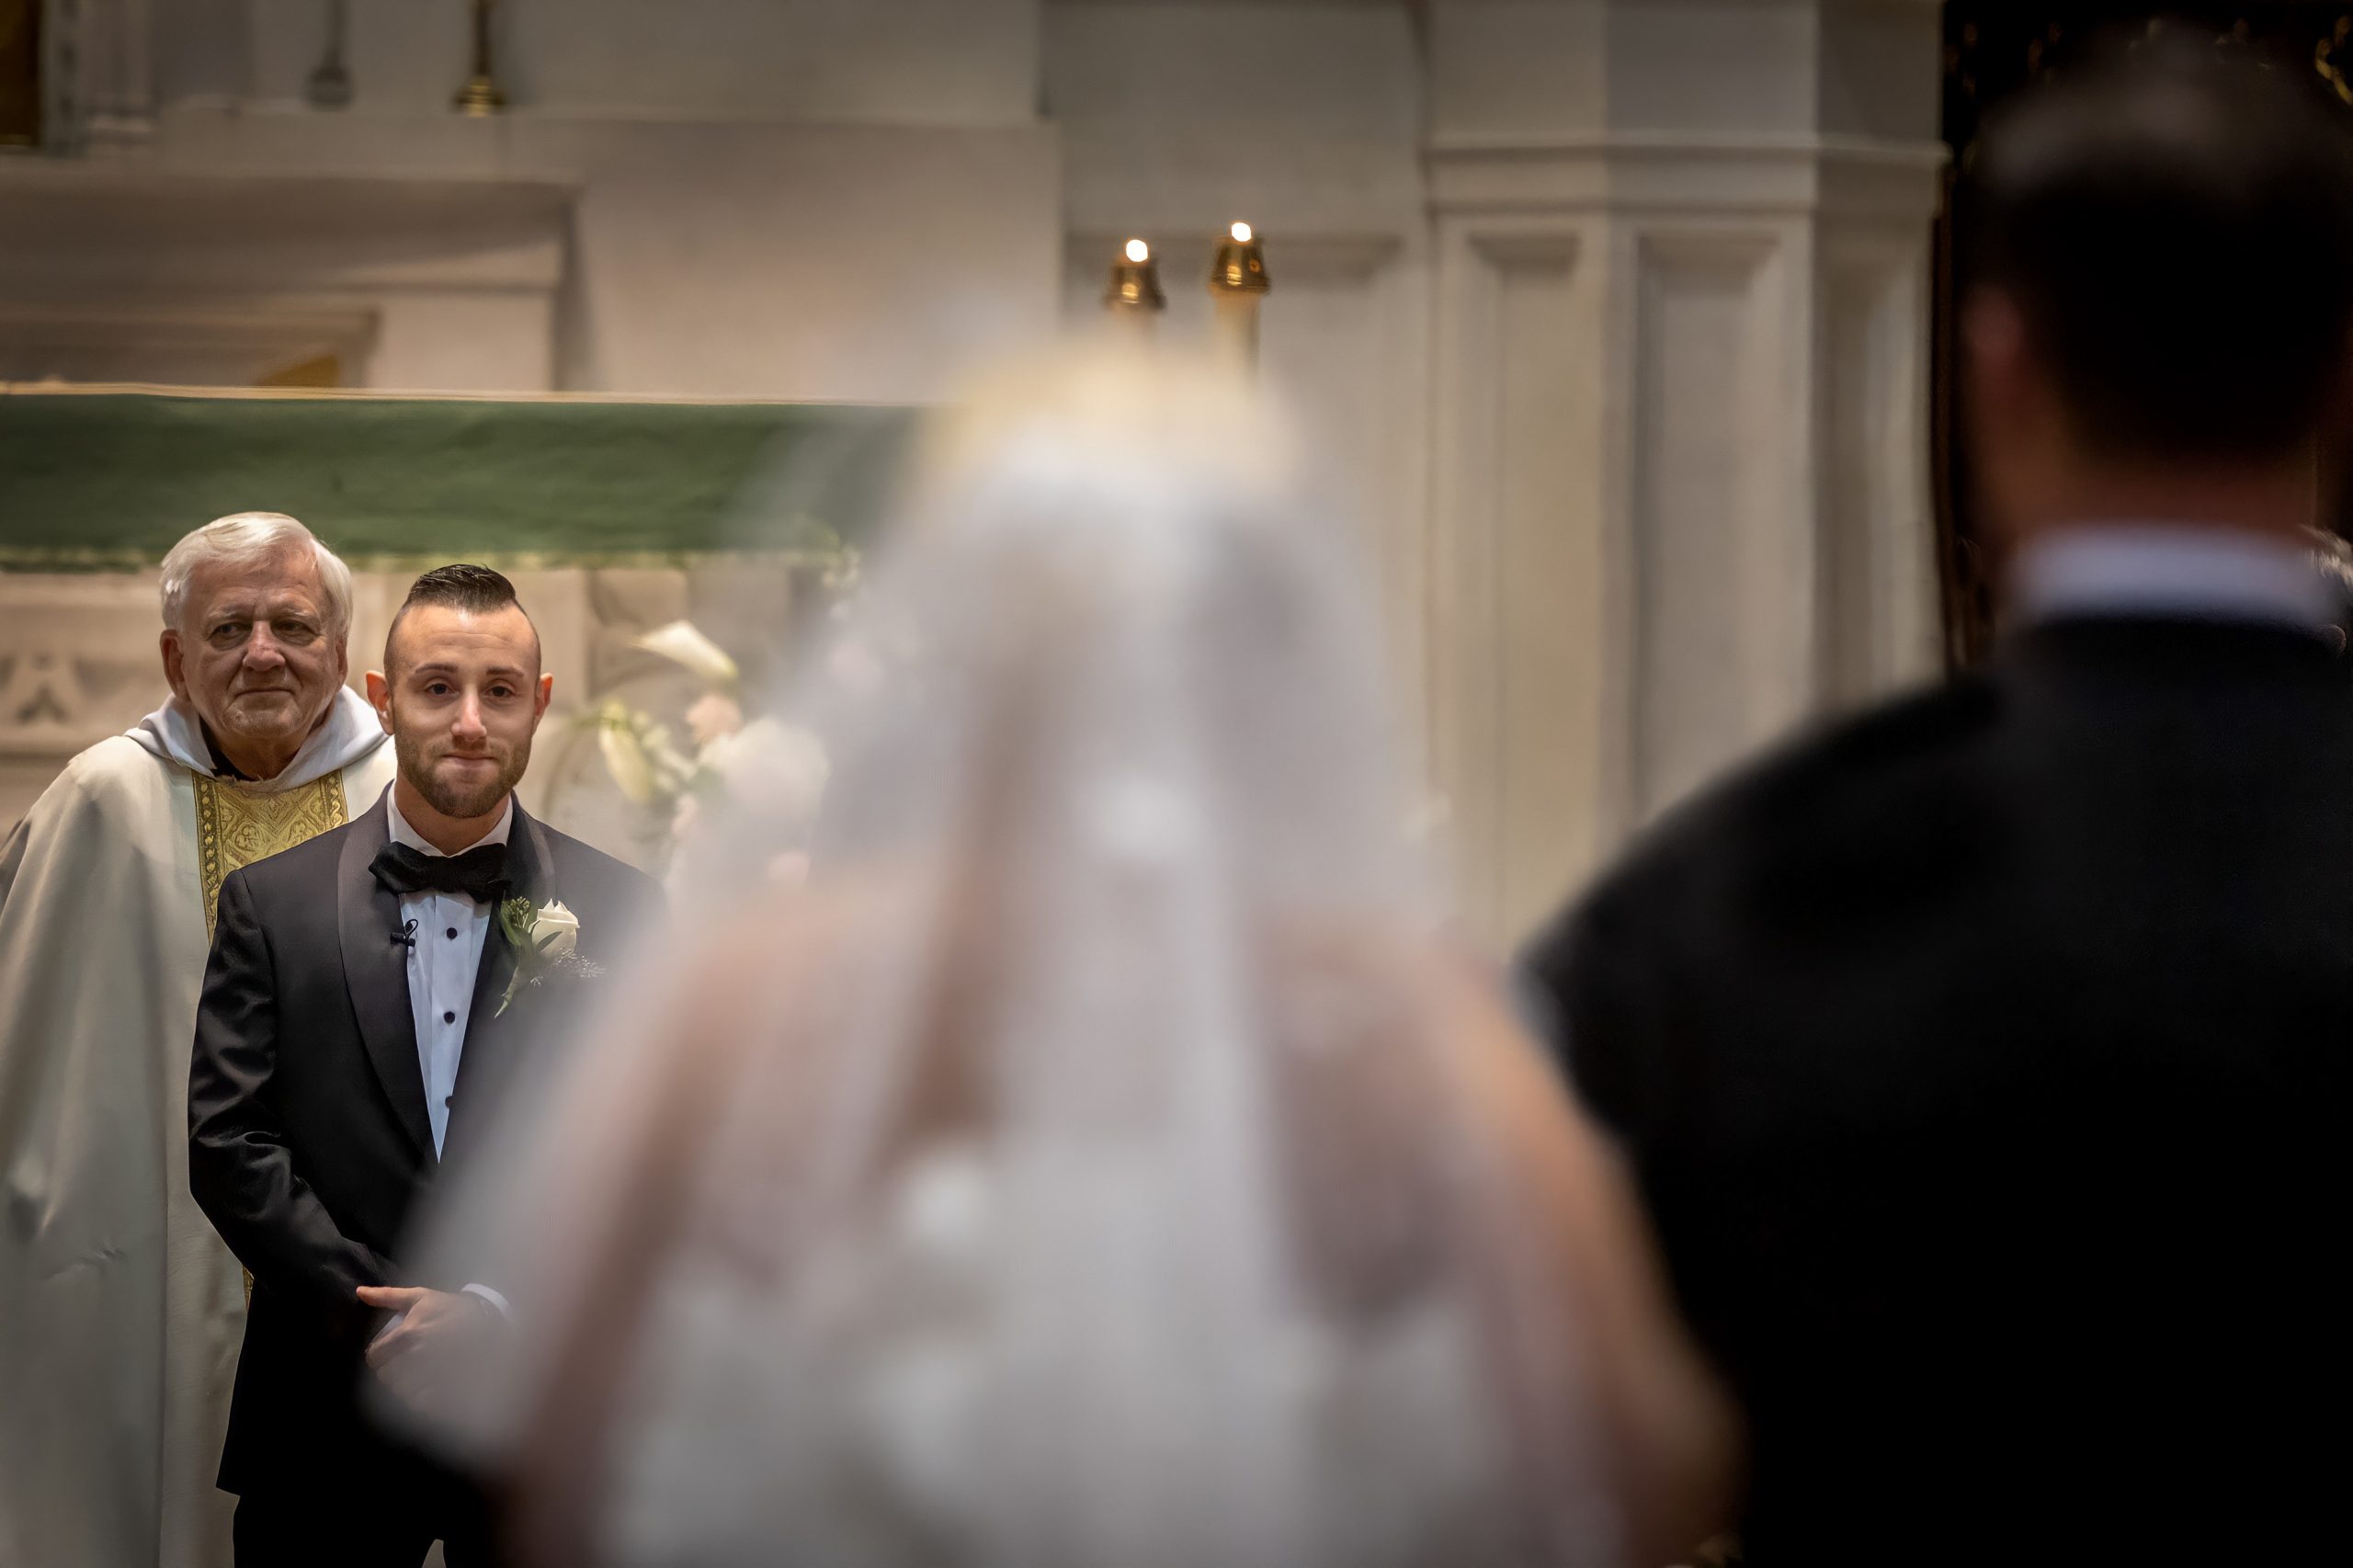 grooms cries as bride walks down the aisle